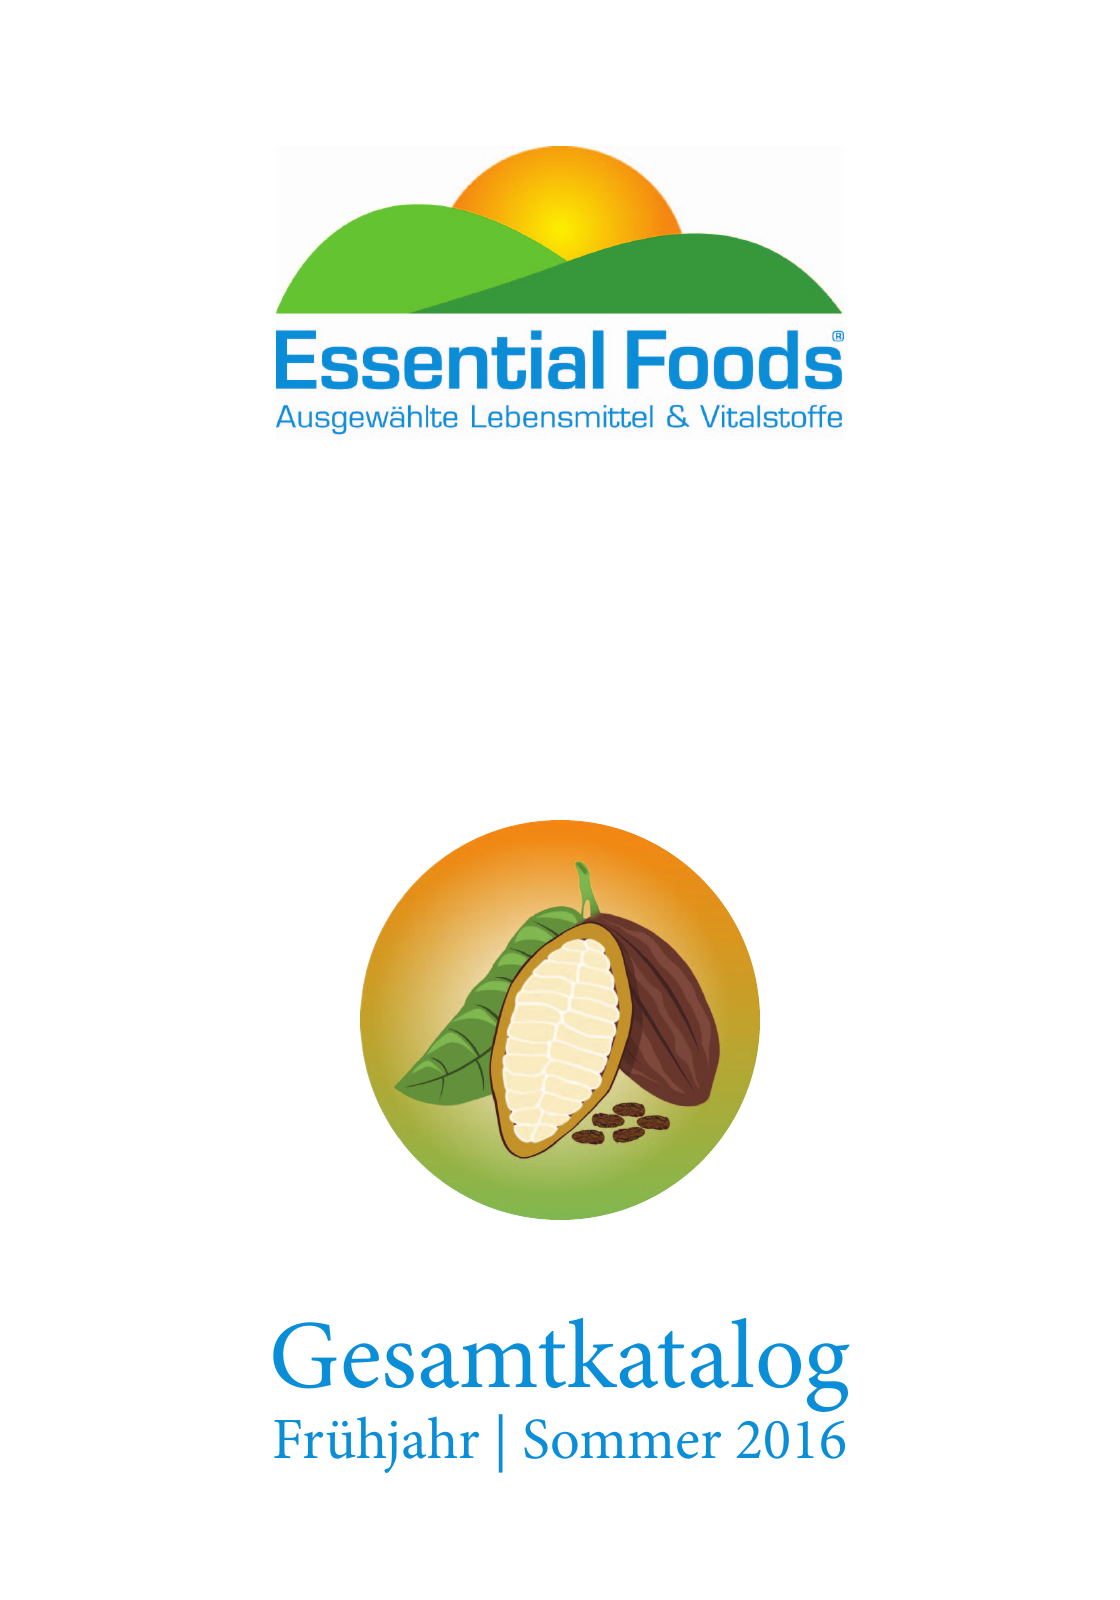 Vorschau Essential Foods Katalog Frühjahr | Sommer 2016 Seite 1